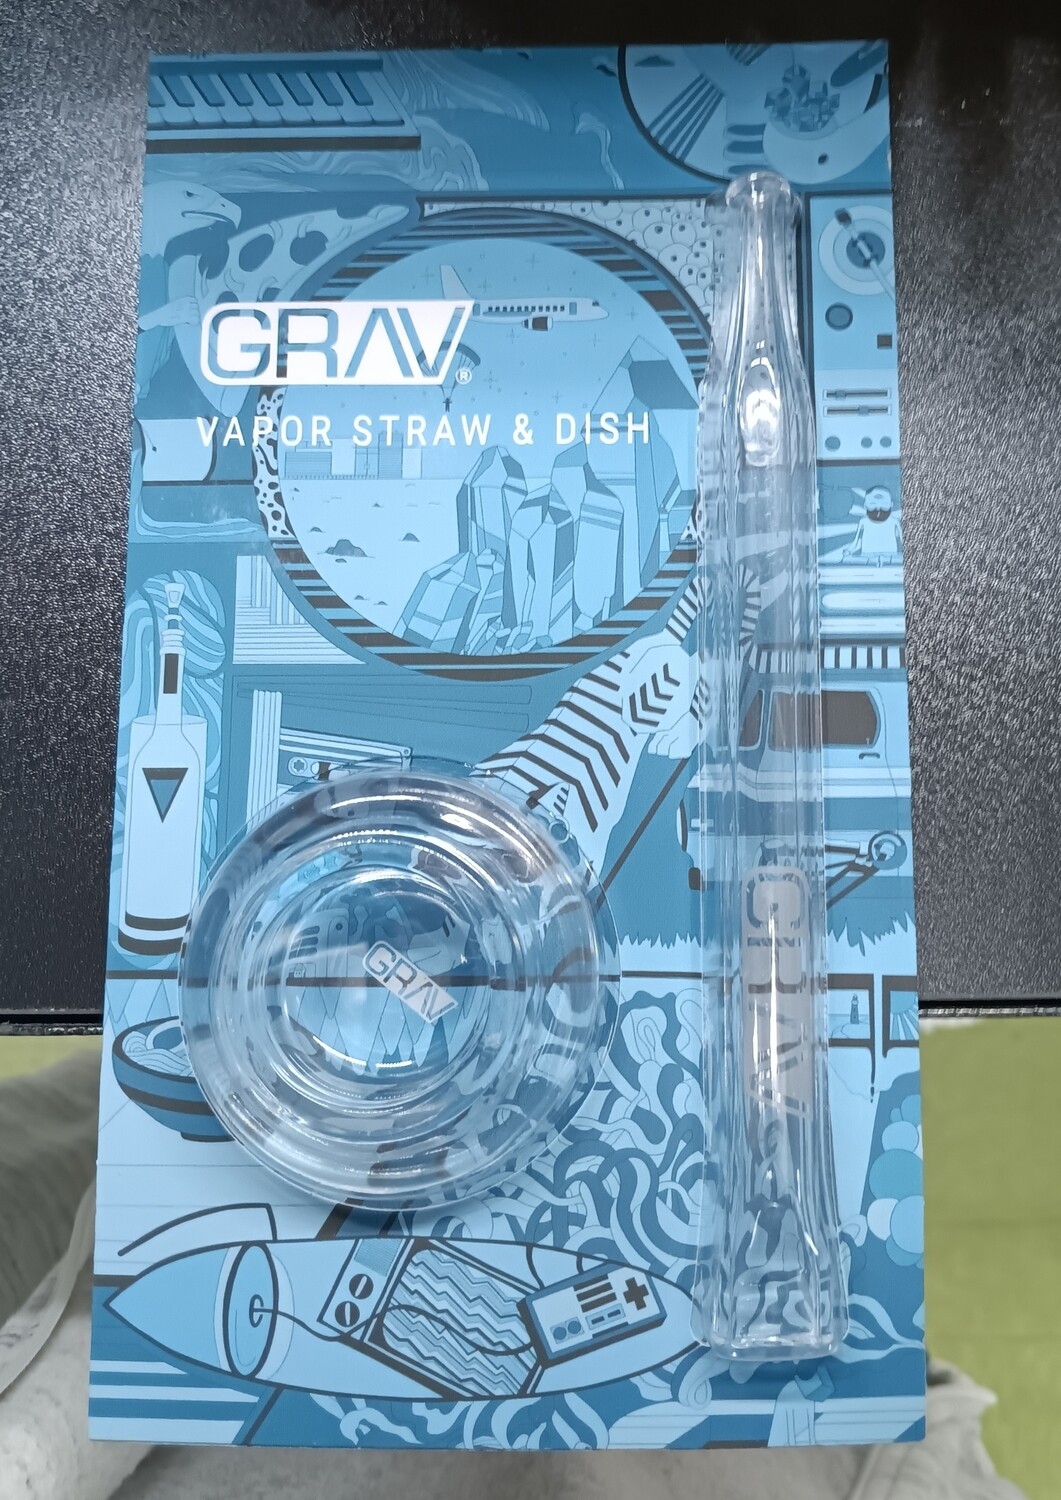 Grav Quartz Vapor Straw & Dish